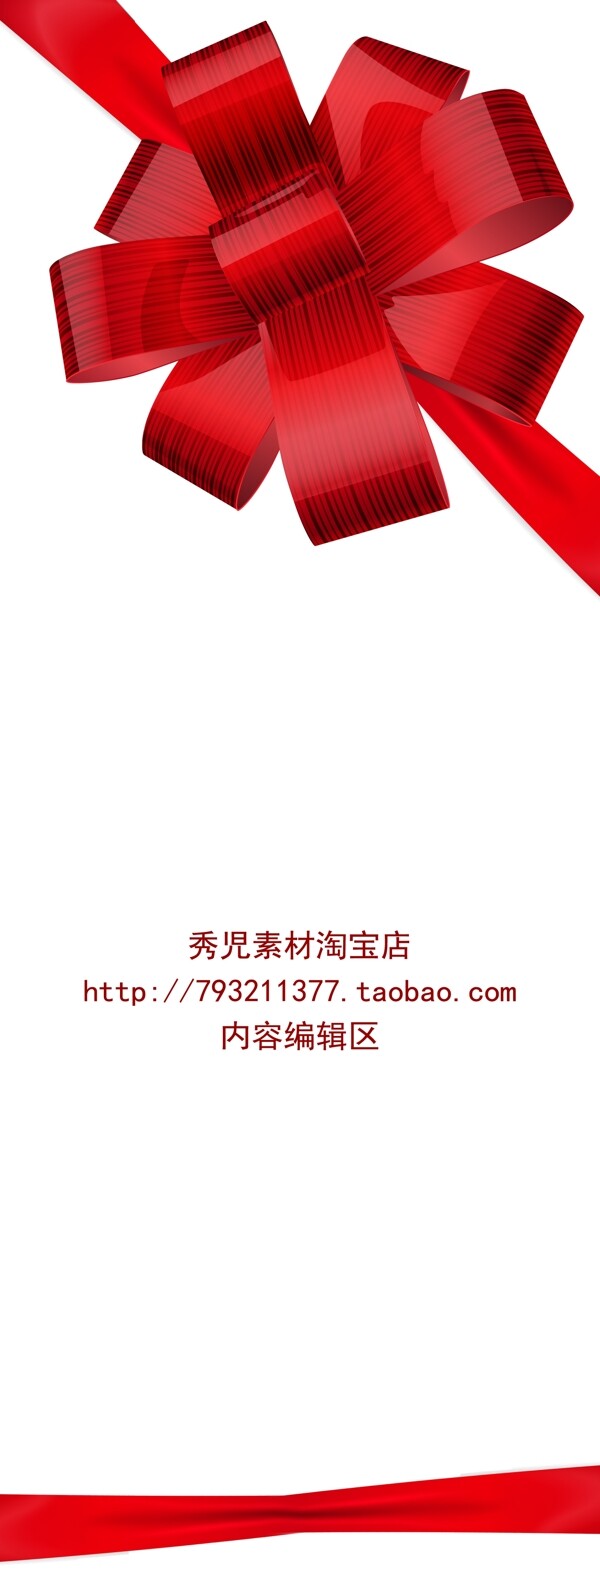 中国结展架模板设计素材